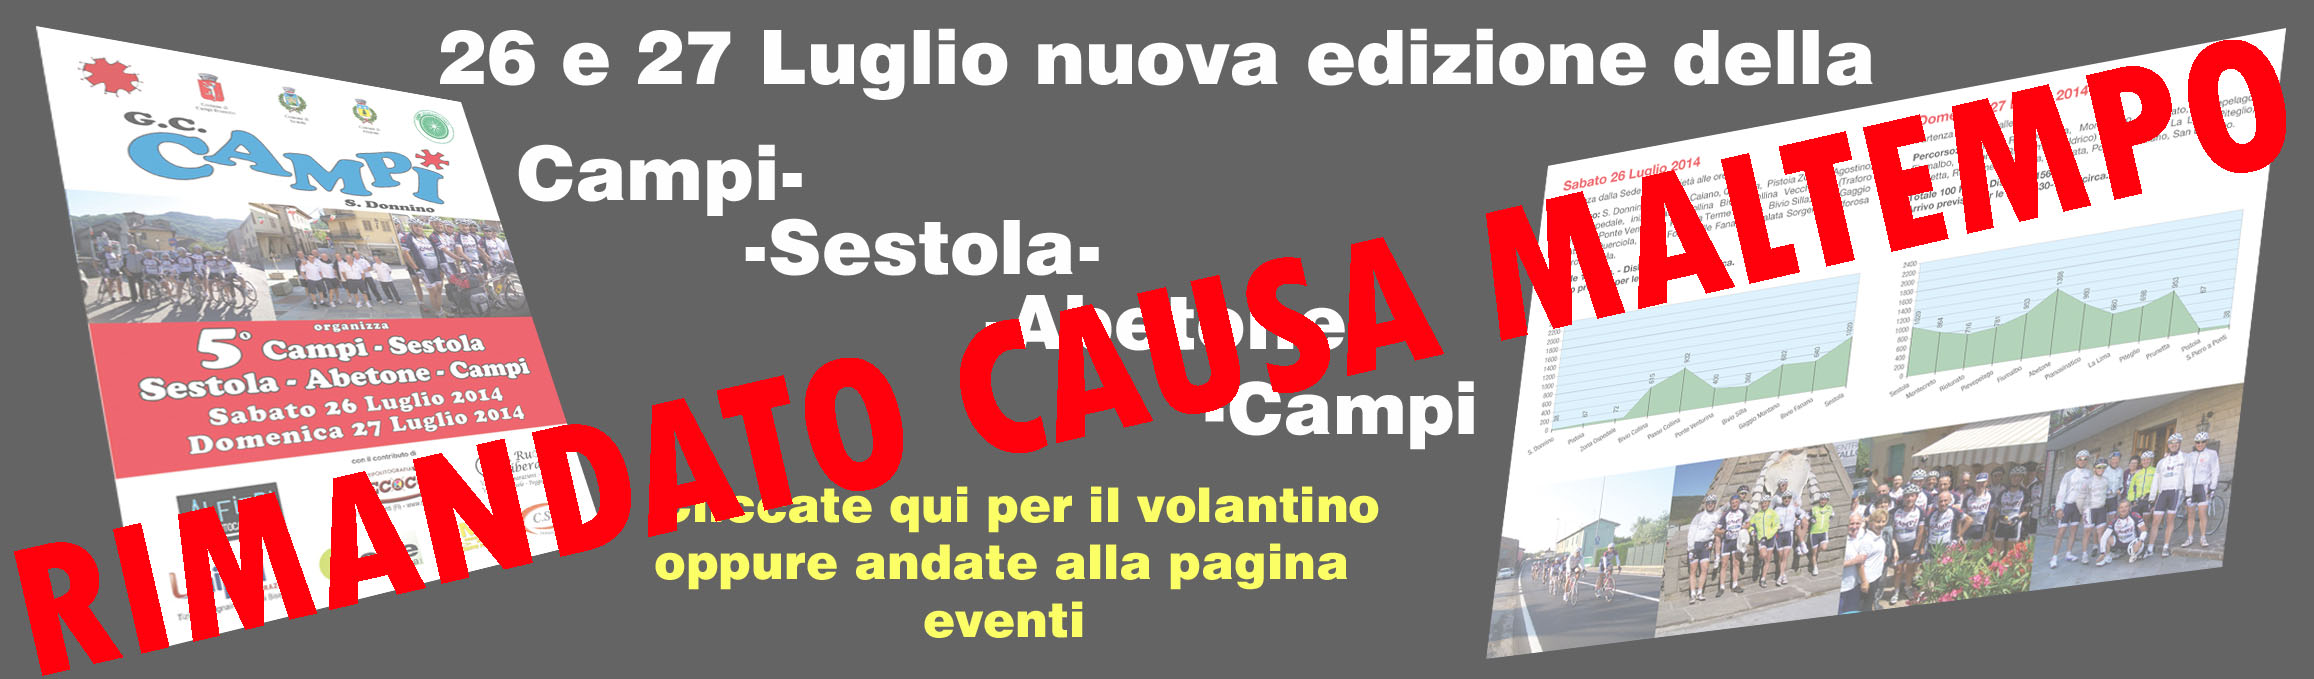 Nuova_edizione_Campi-Sestola